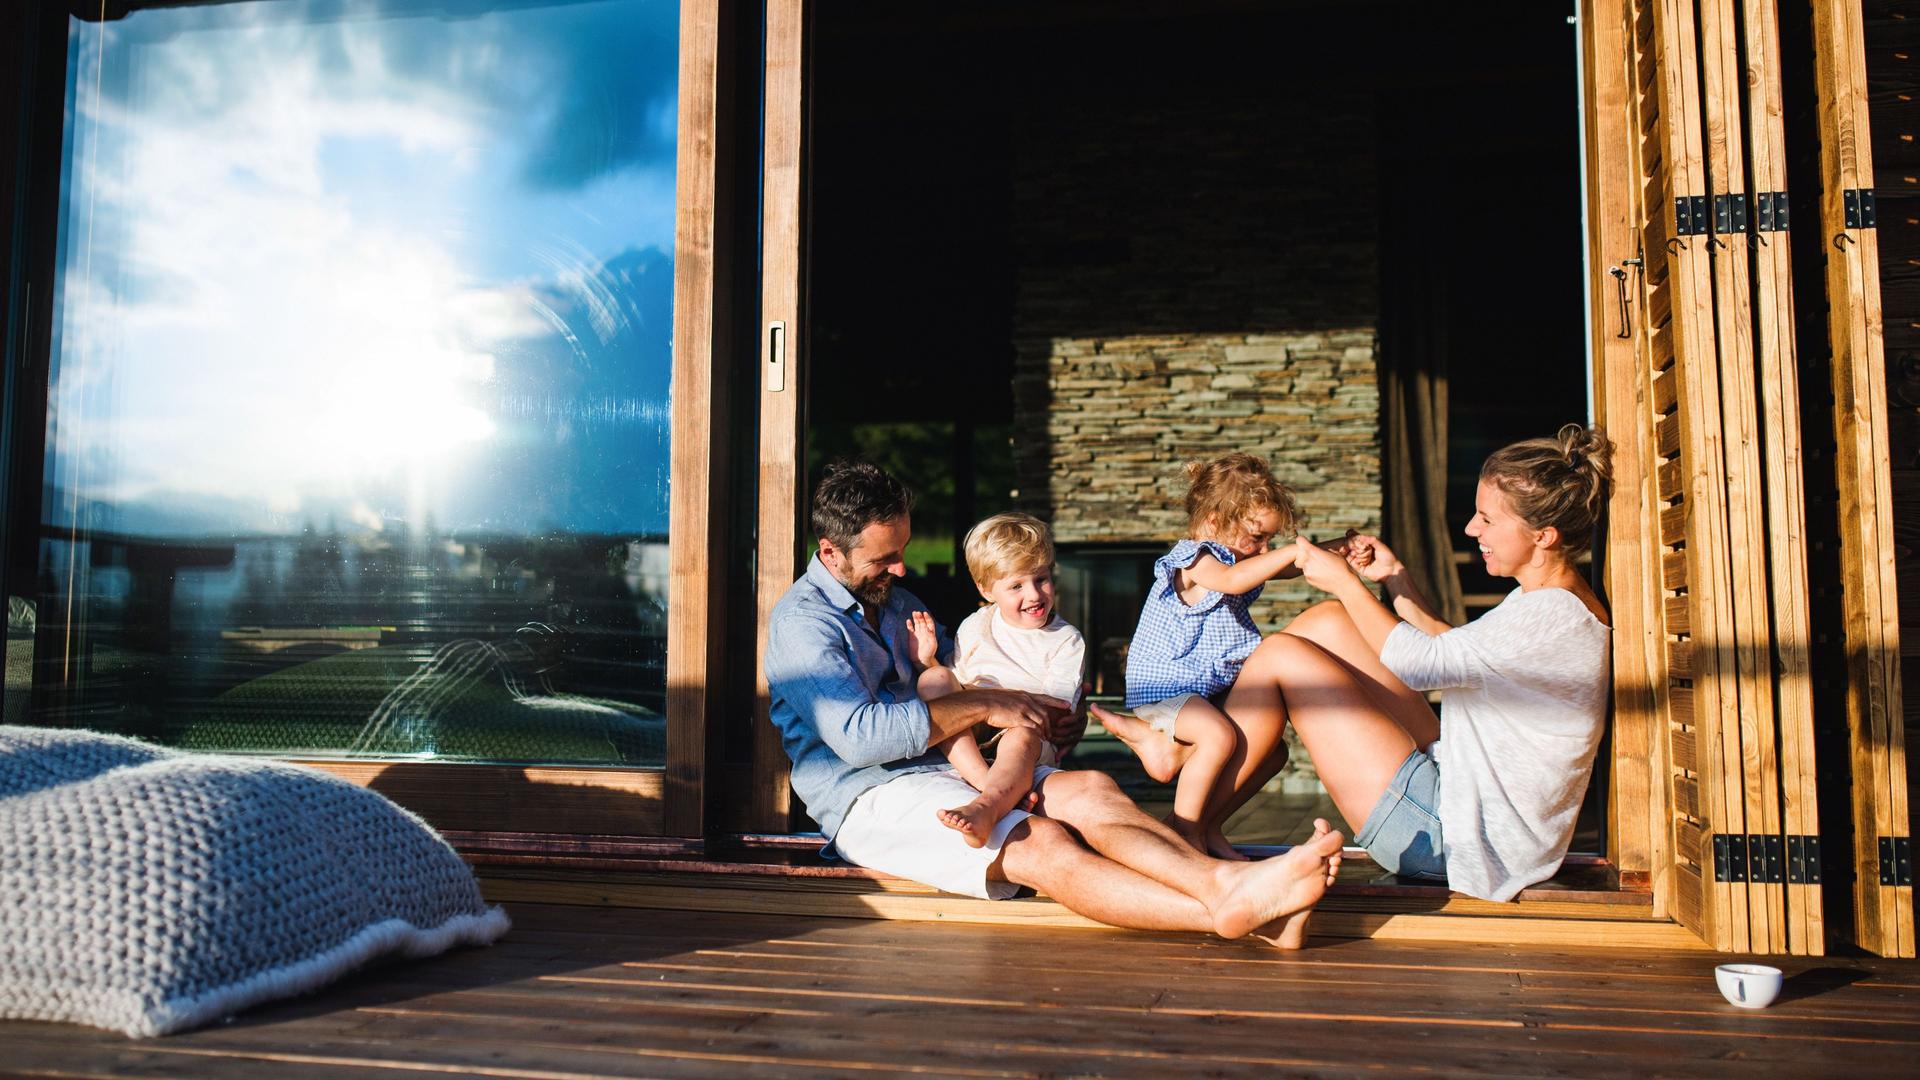 Familie mit kleinen Kindern, die auf dem Boden der Terrasse eines Holzhauses sitzen. Sie sind sommerlich gekleidet und die Sonne spiegelt sich in der Terassentür.